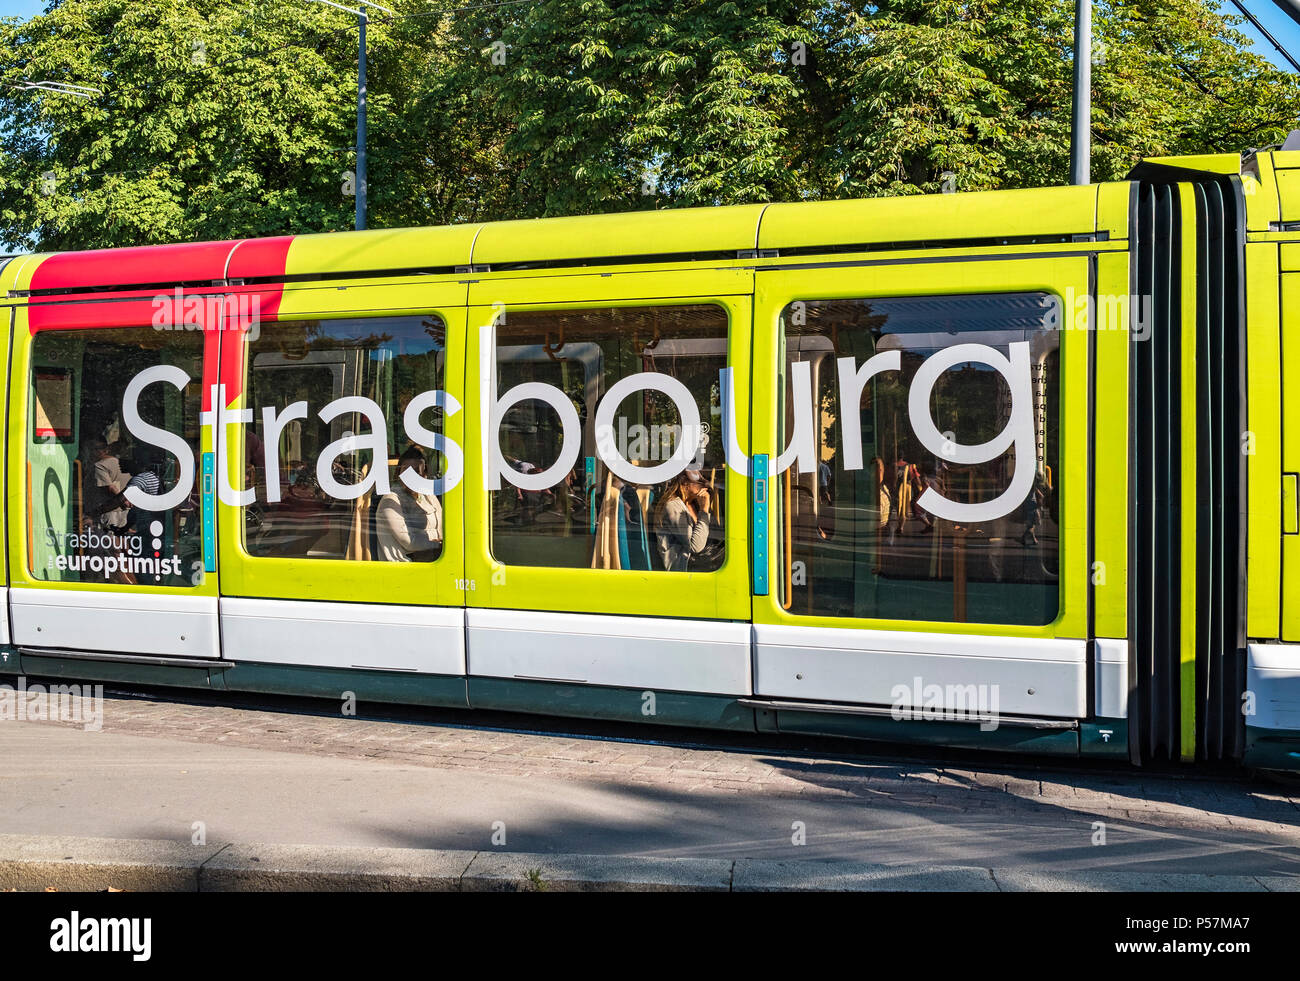 Straßburg, grün Straßenbahn-Wagen mit großen Schriftzug Straßburg, Elsass, Frankreich, Europa, Stockfoto